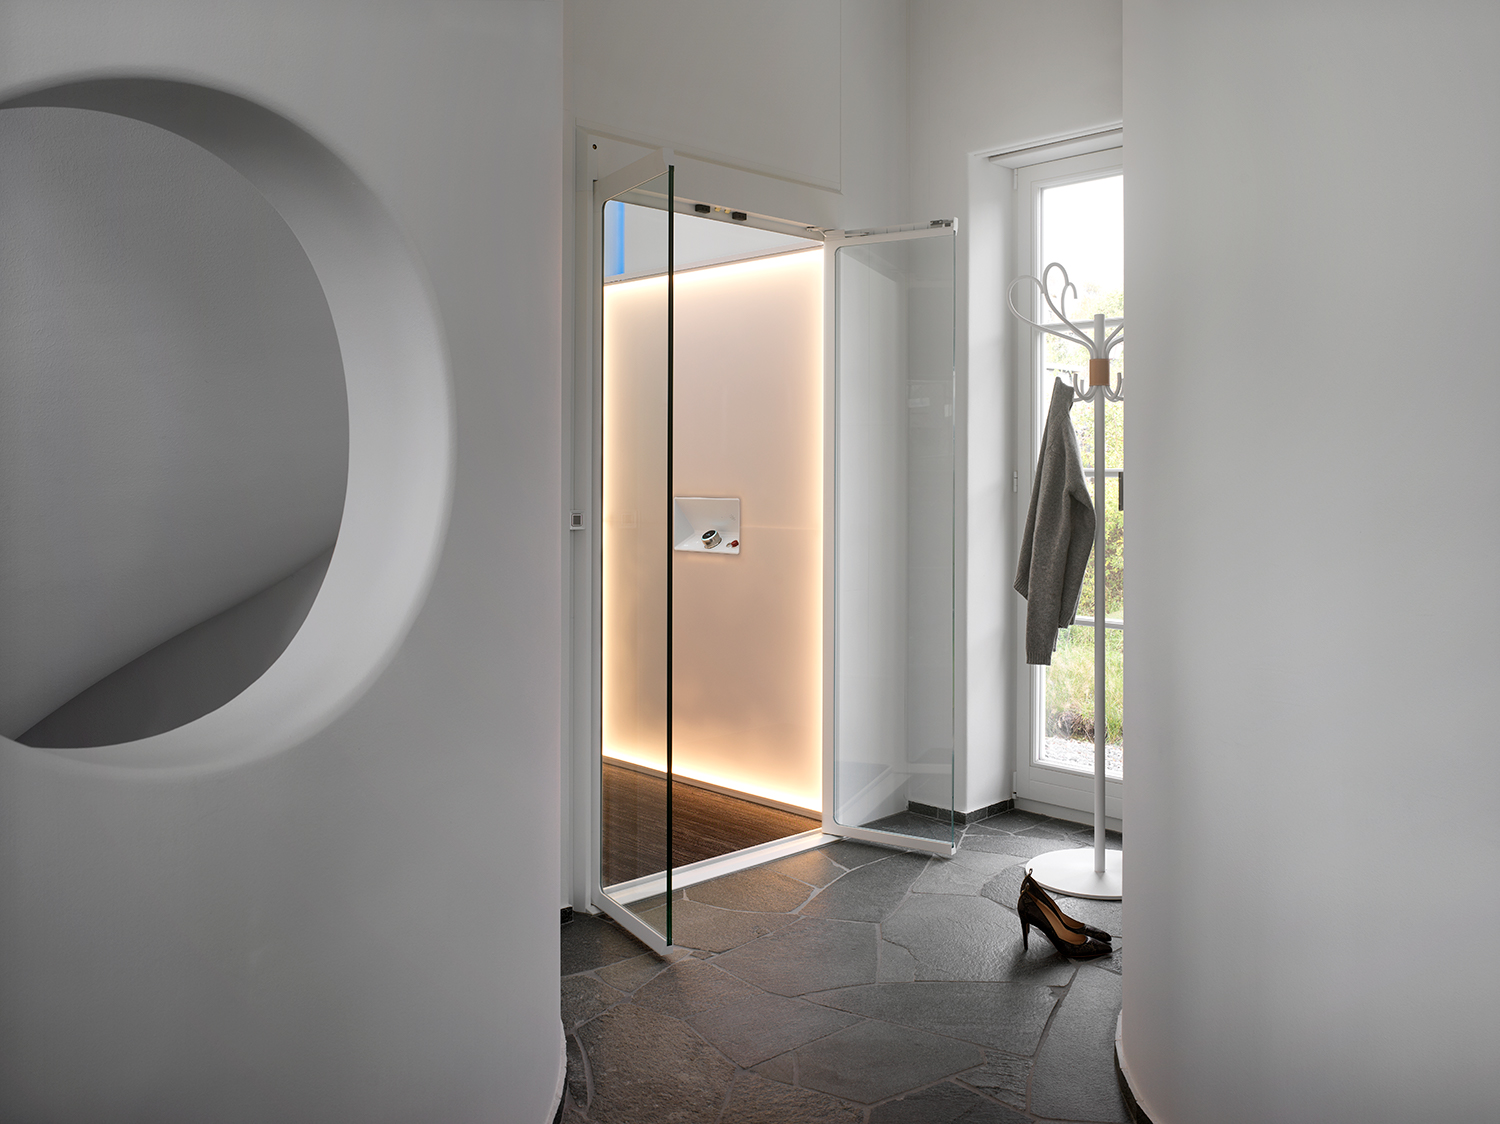 Lift Rumah Minimalis: Solusi Elegan untuk Ruang Terbatas